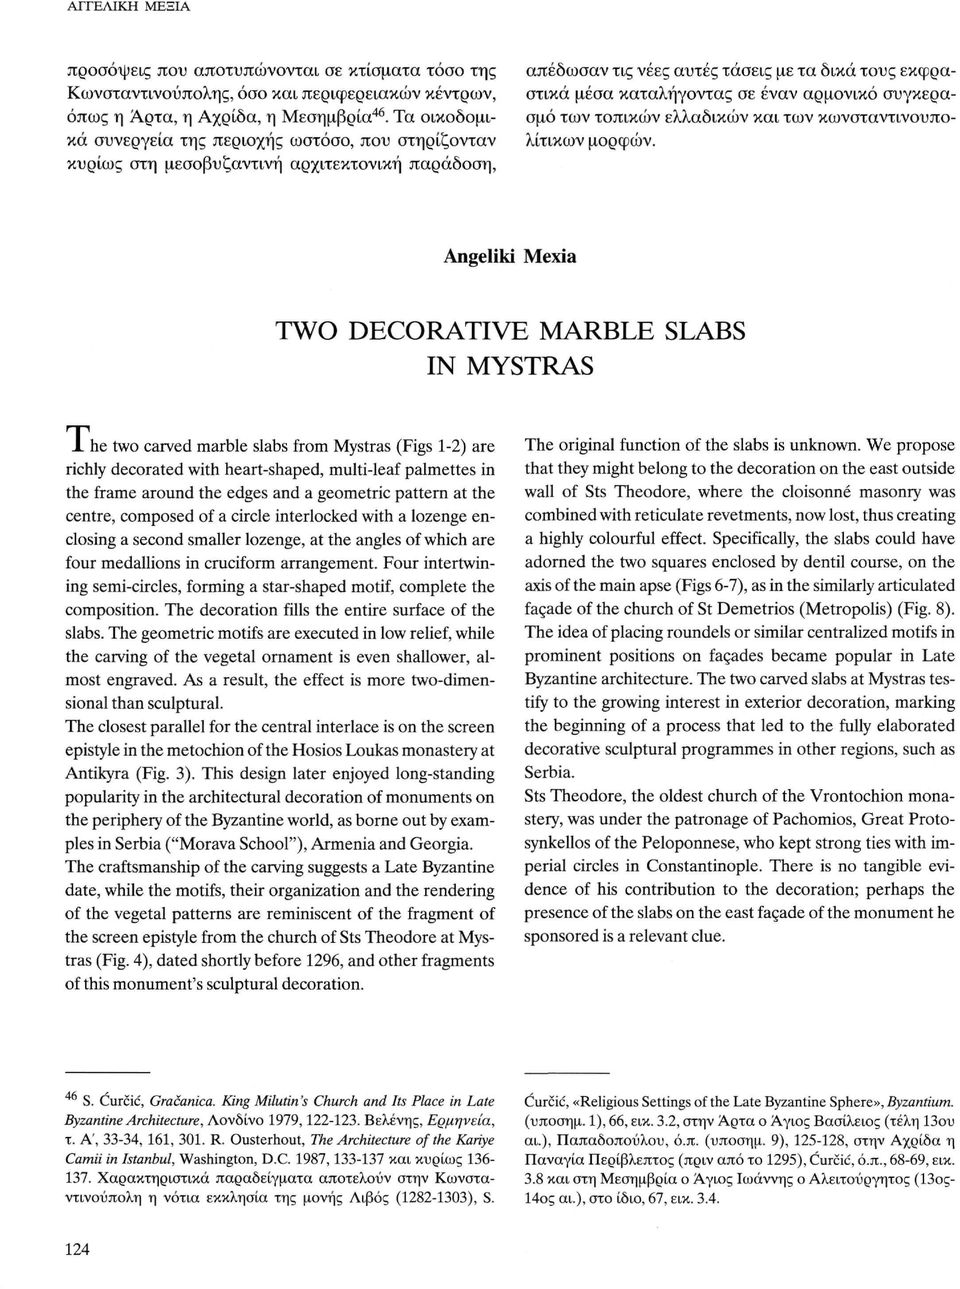 αρμονικό συγκερασμό των τοπικών ελλαδικών και των κωνσταντινουπολίτικων μορφών. Angeliki Mexia TWO DECORATIVE MARBLE SLABS IN MYSTRAS J.